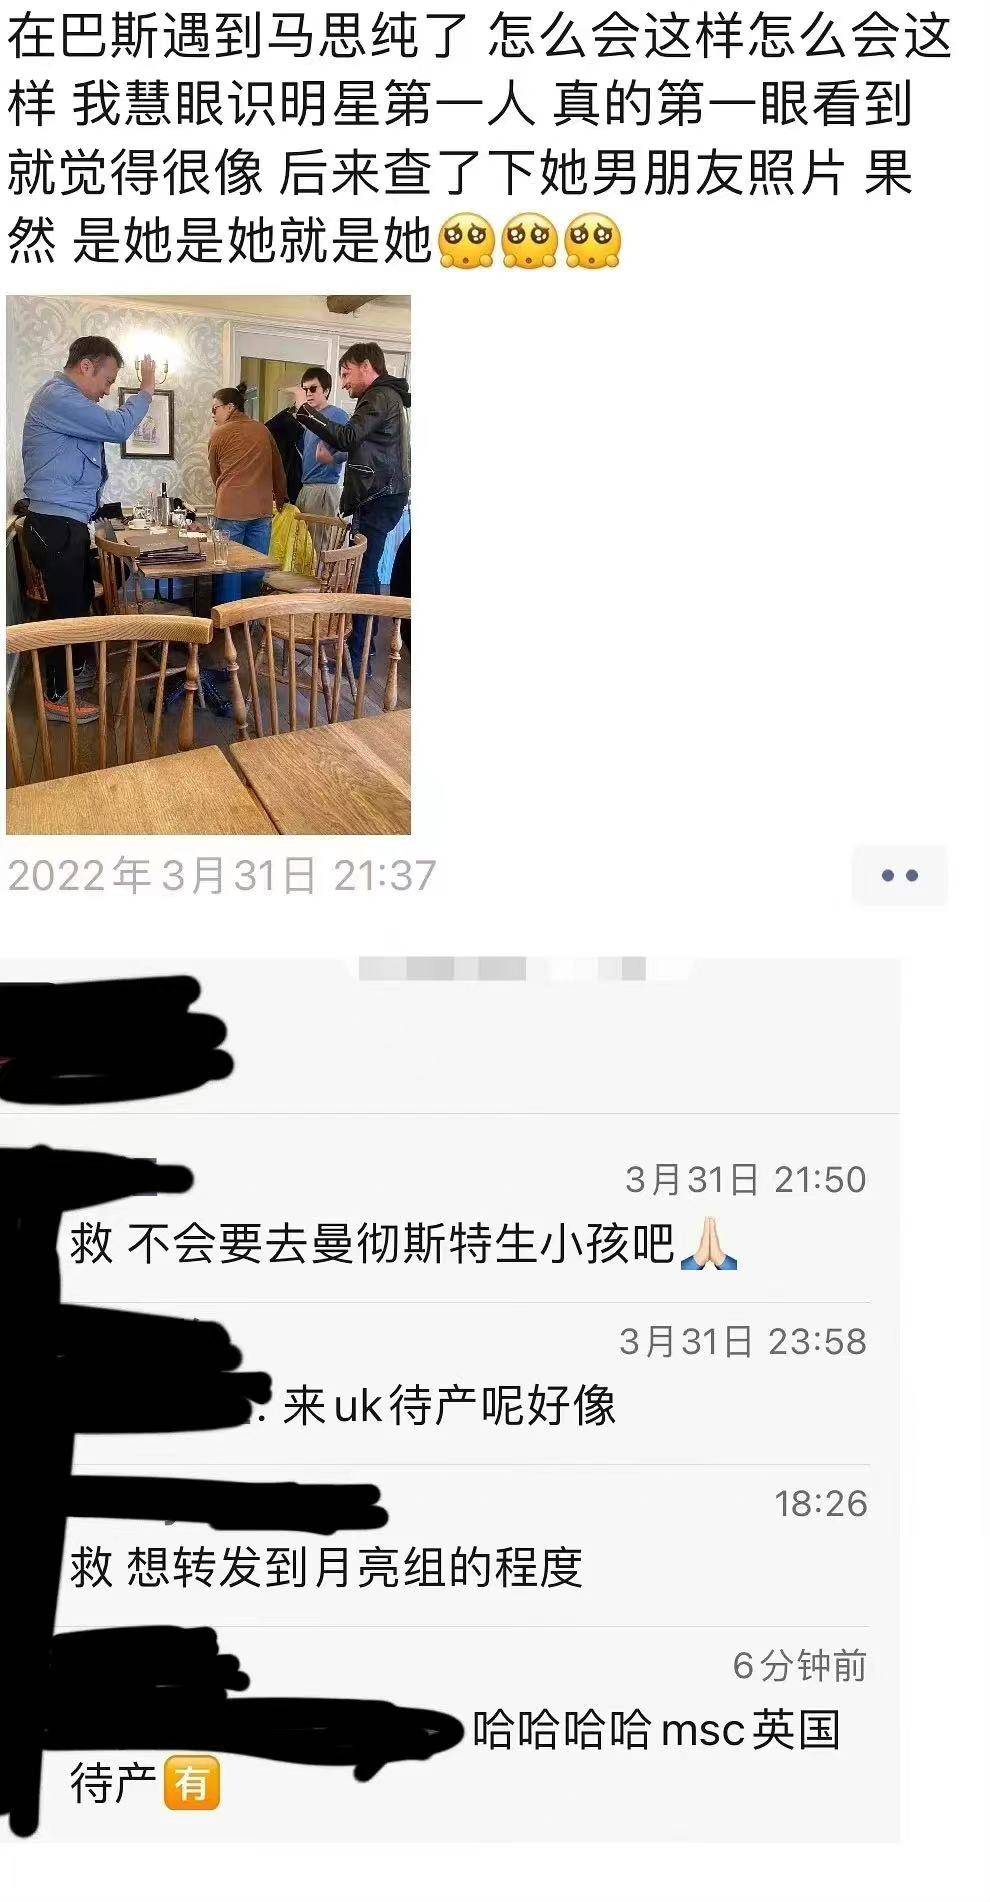 马思纯和男友张曼乐英国被拍 网友猜测是去英国待产